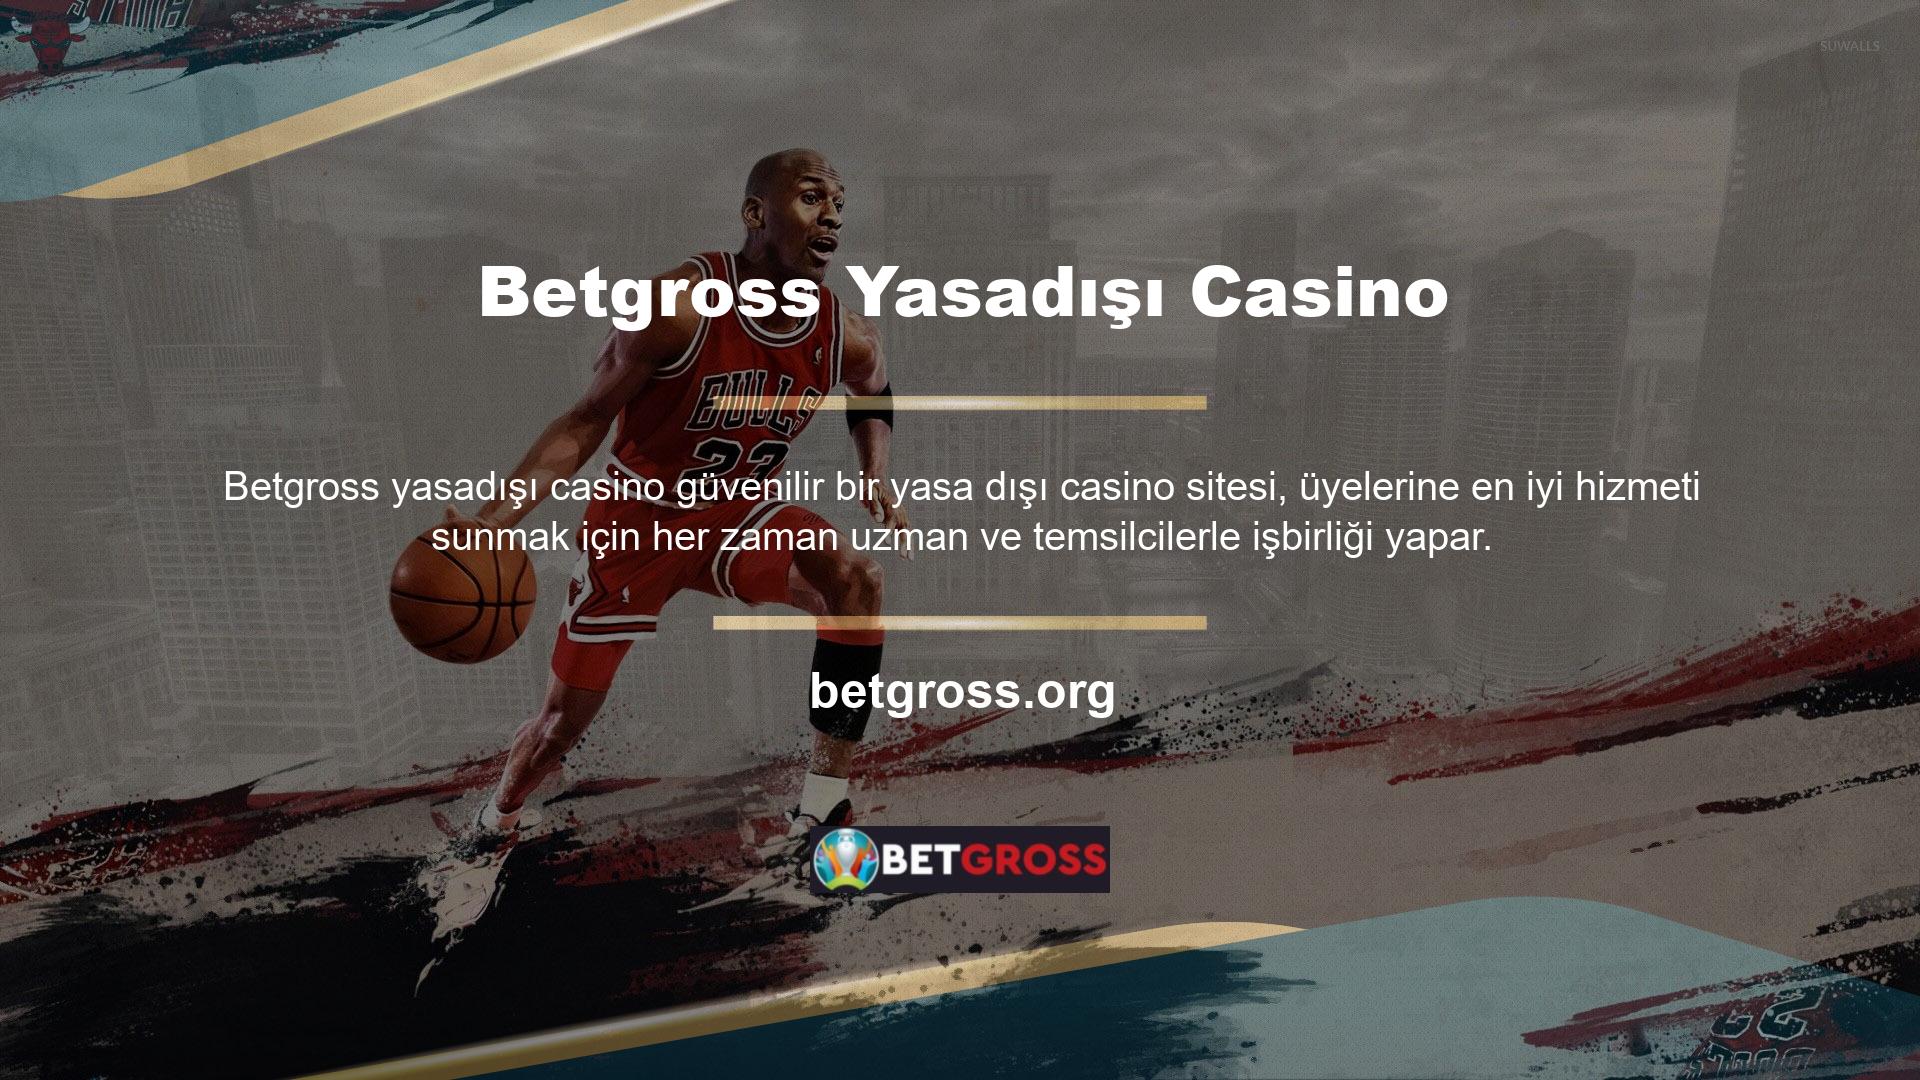 Canlı bahis ve casino oyun sitesi Betgross, ödemeler konusunda müşterilerine büyük bir güven duymaktadır